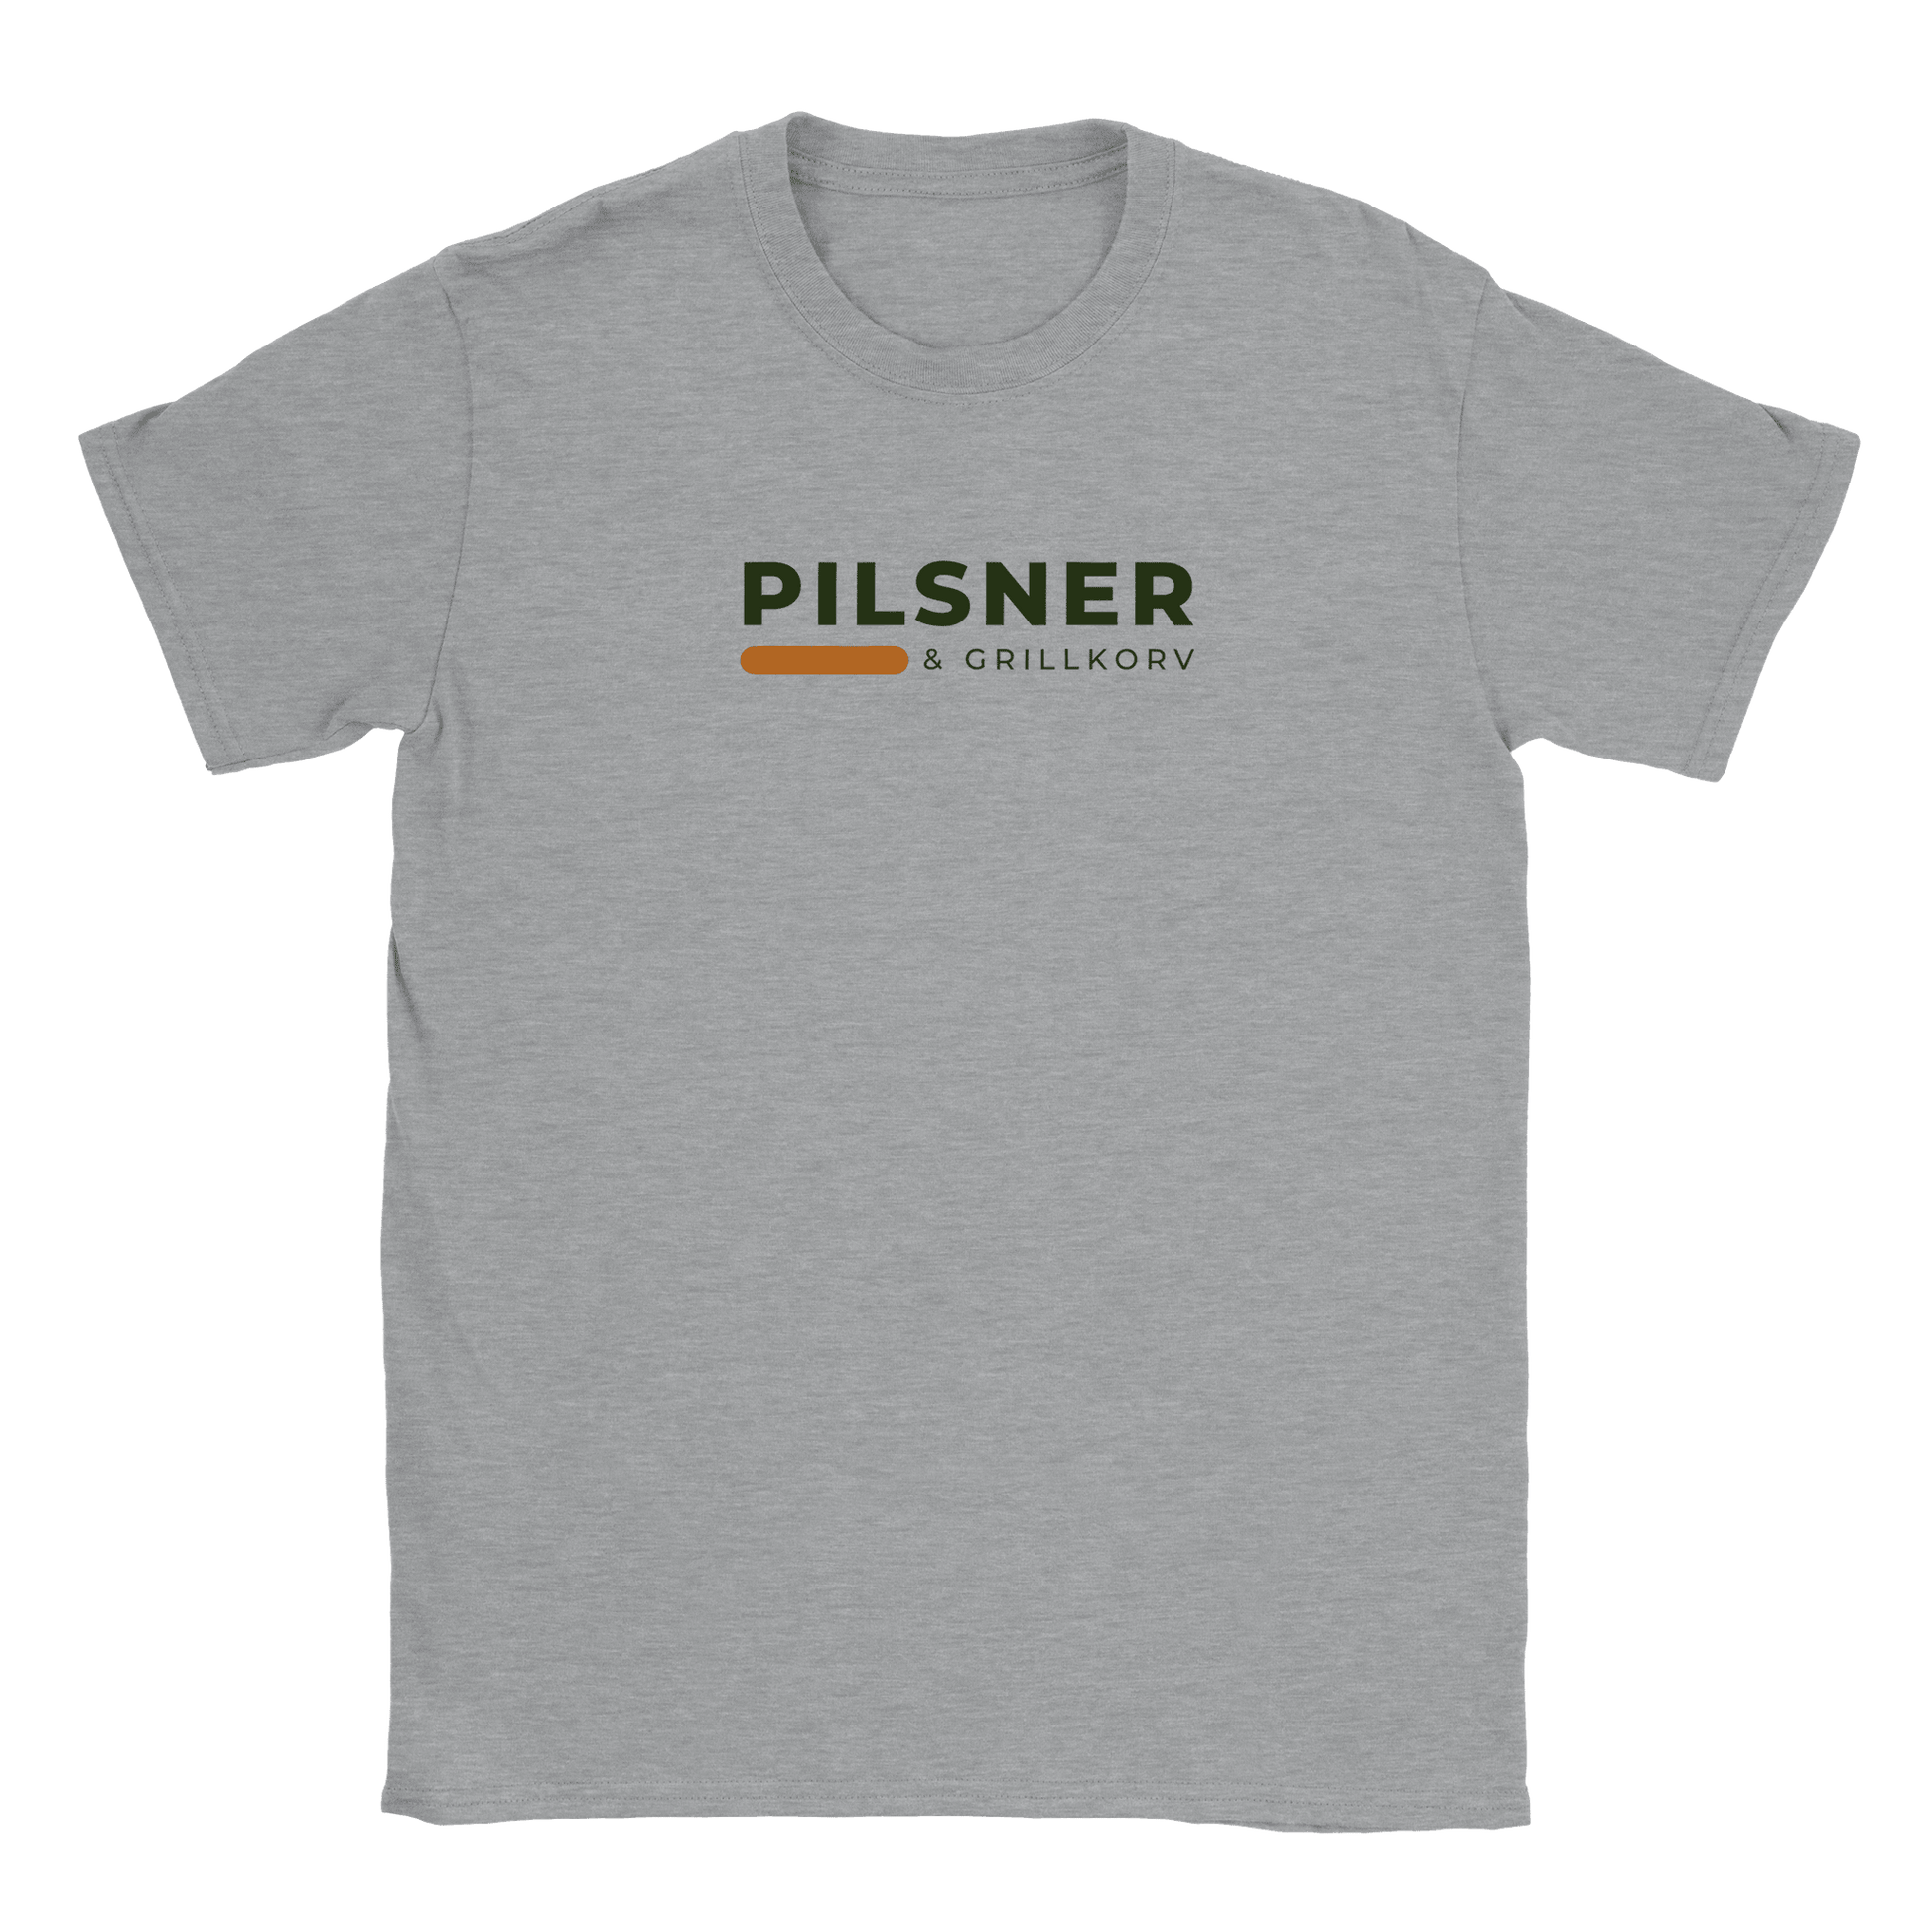 Pilsner och grillkorv - T-shirt Grå